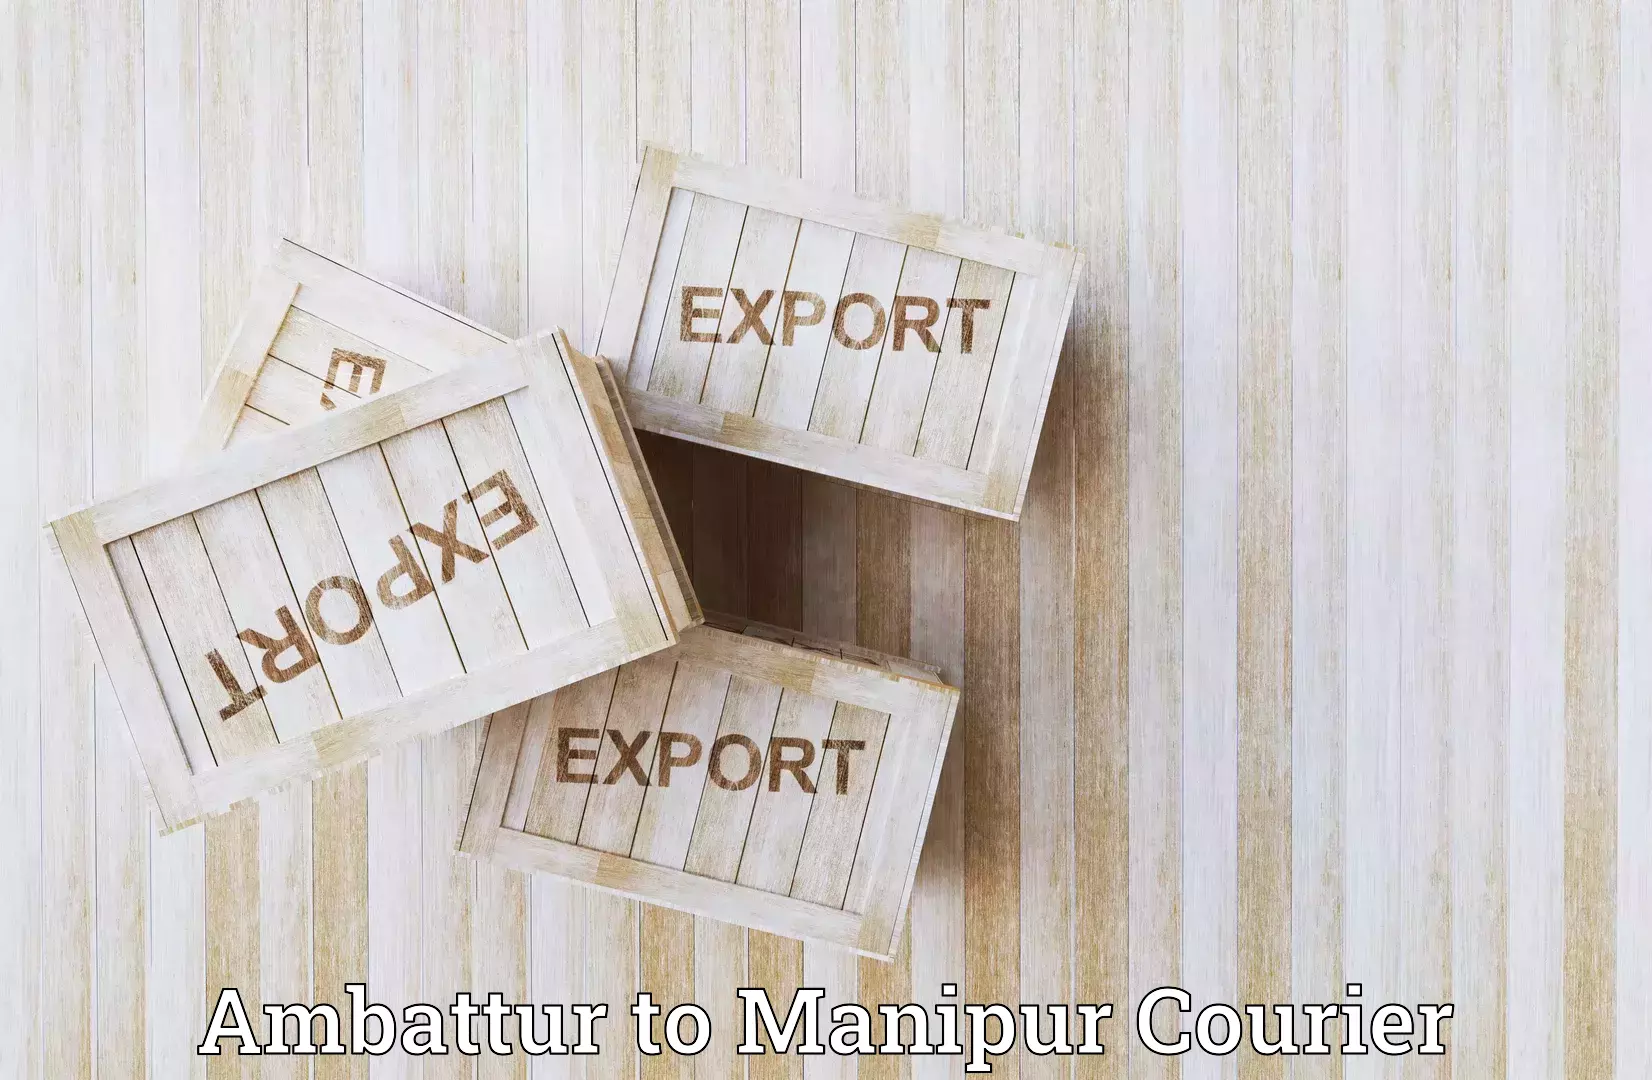 On-demand courier Ambattur to Manipur